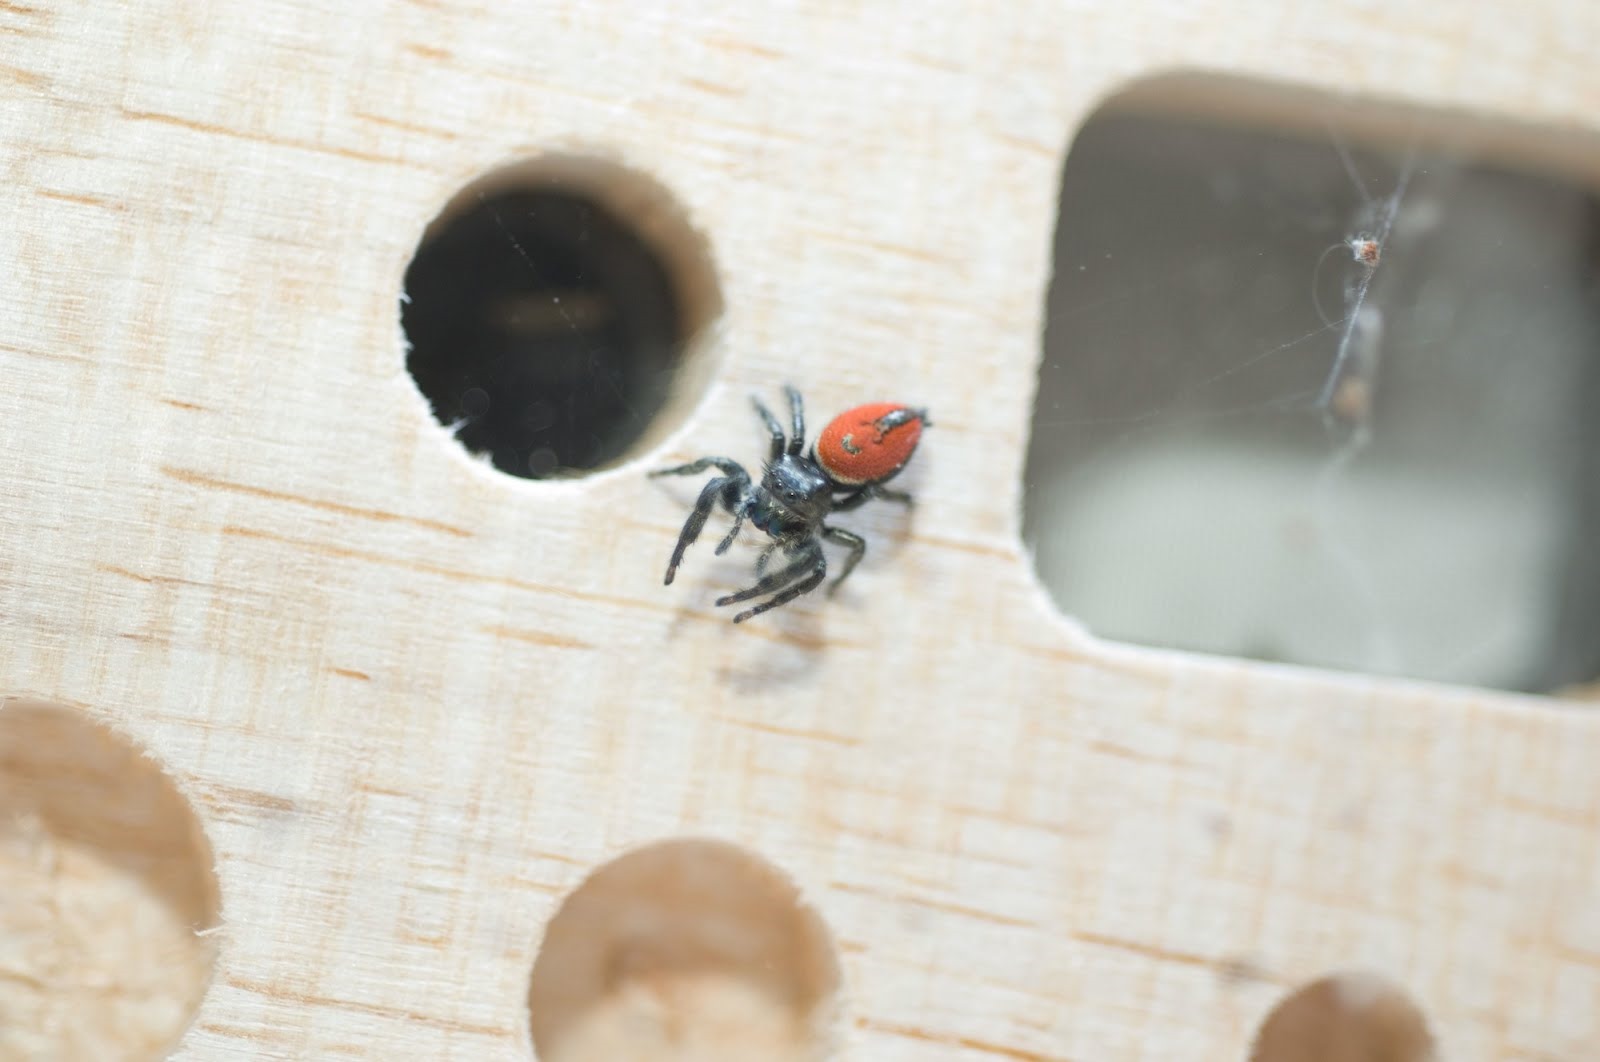 L’espace a rendu cette araignée sauteuse très maladroite (vidéo)